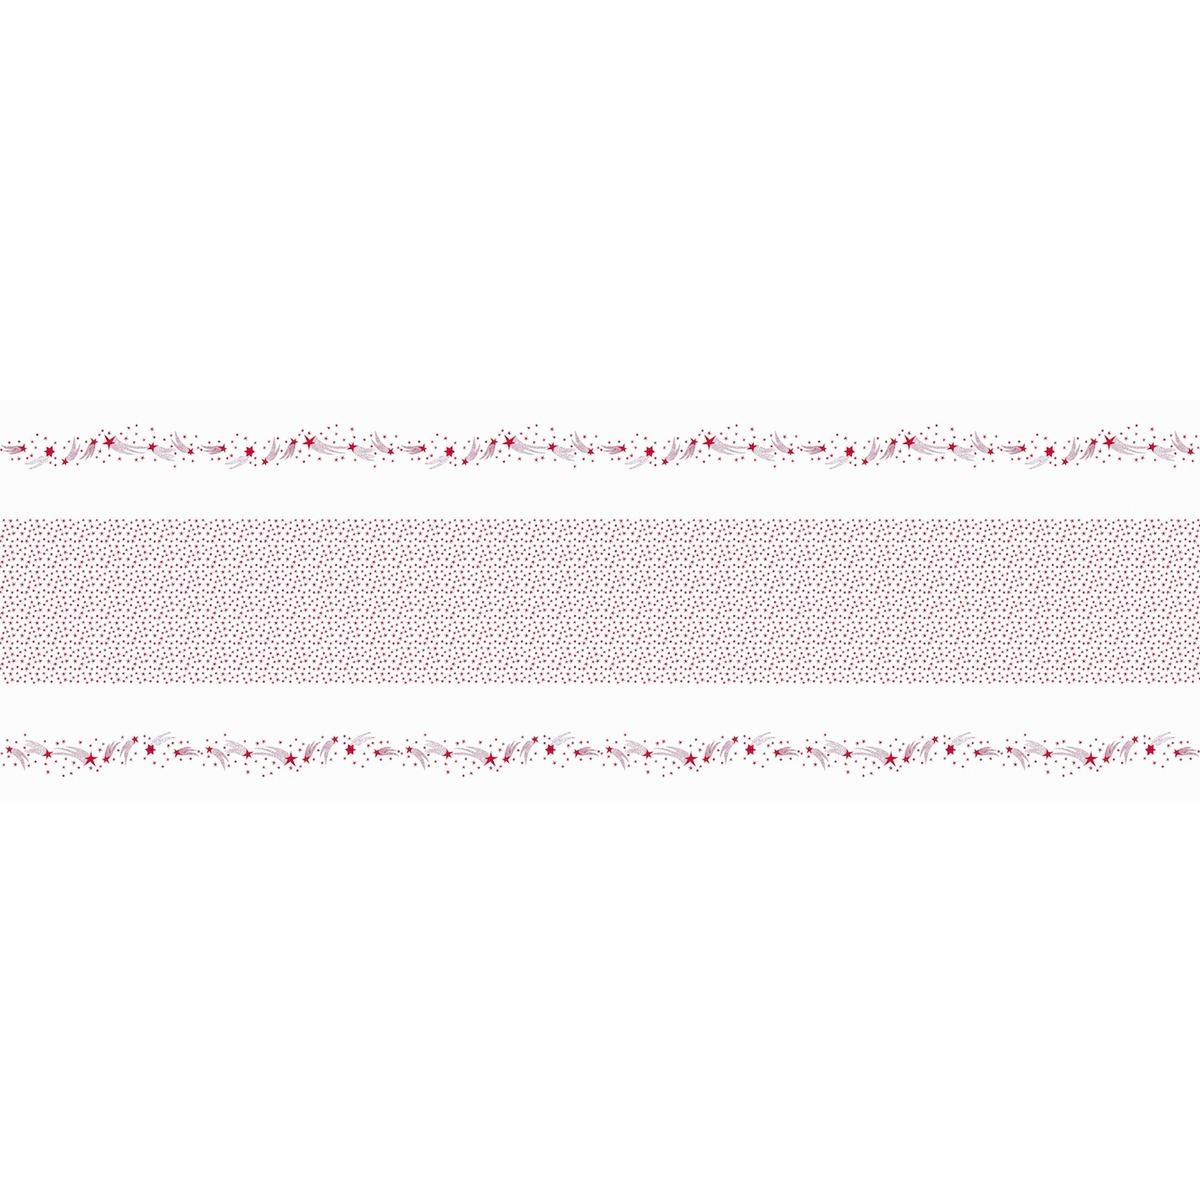 Nappe en rouleau motif étoiles filantes - 1,18 x 6 m - Blanc, Rouge